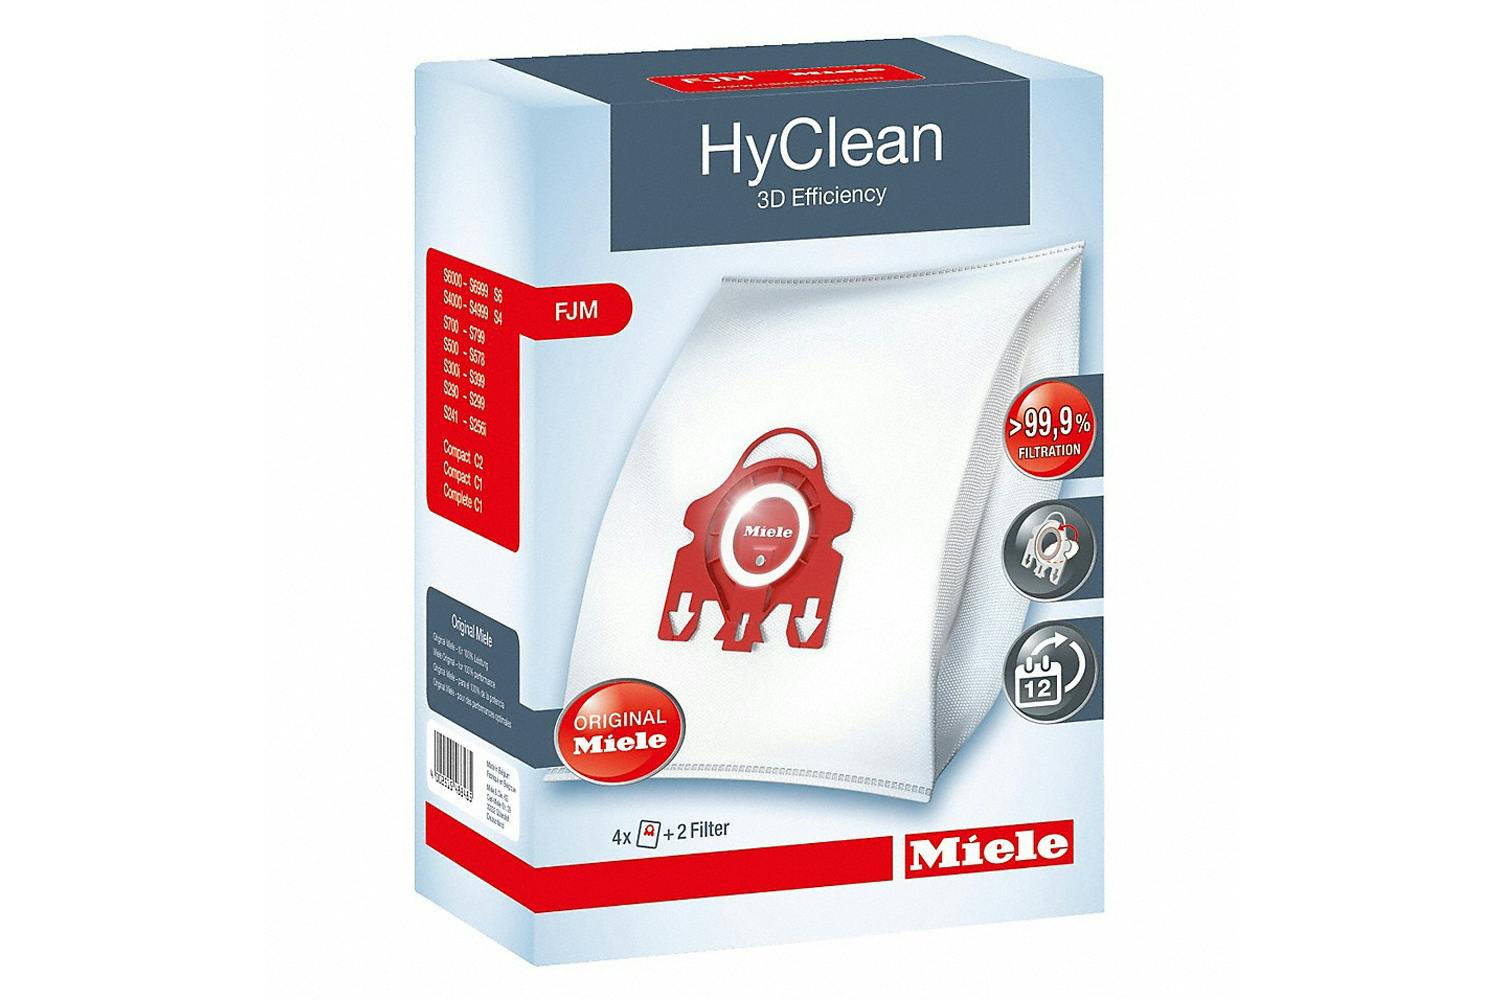 Miele FJM HyClean 3D Efficiency Vacuum Dust Bag